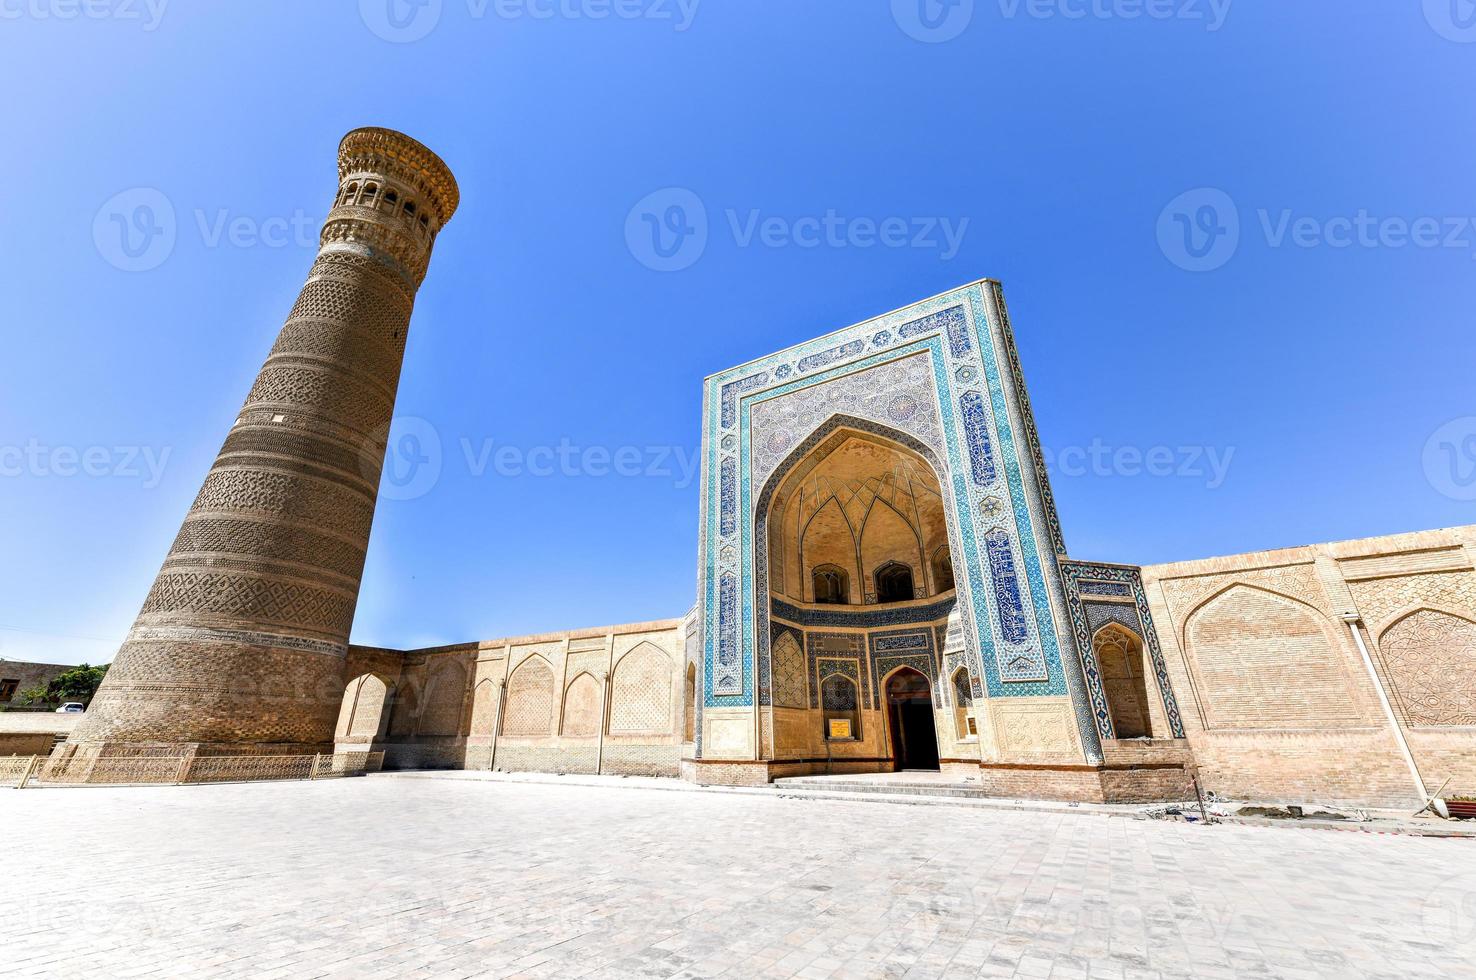 mesquita kalyan e grande minarete do kalon em bucara, uzbequistão. foto